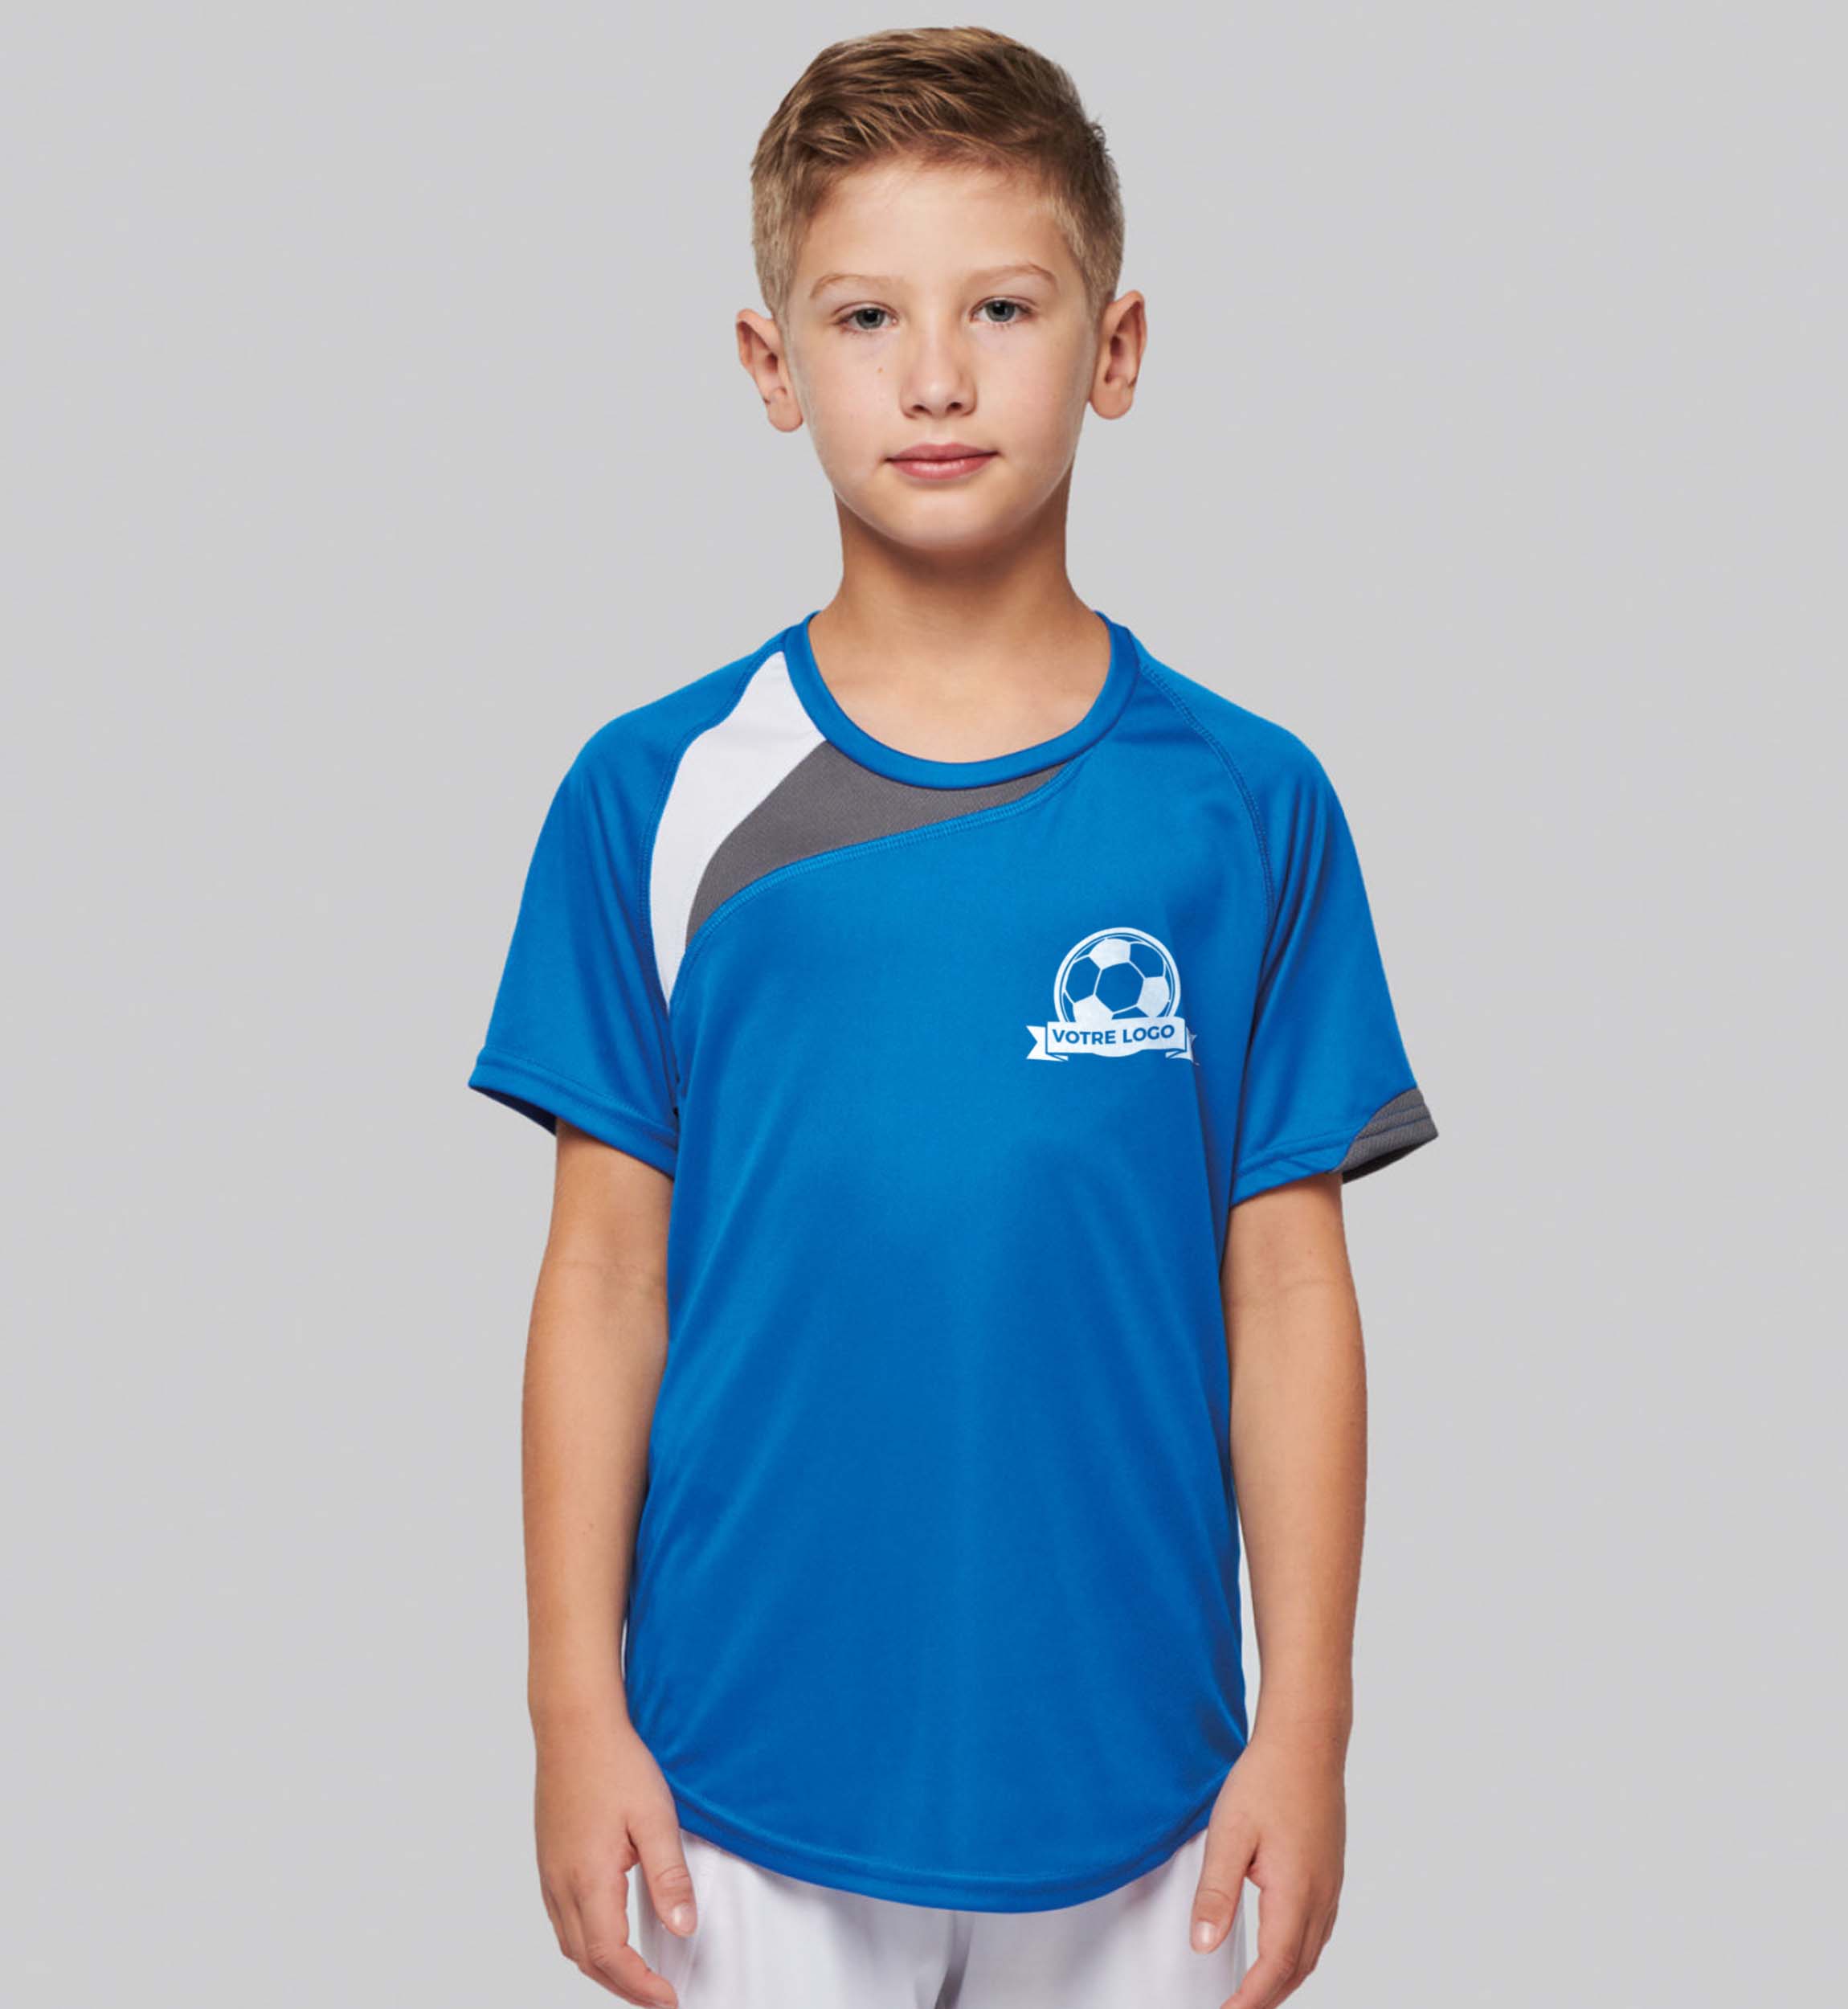 pictoPersonnalisez Le T-Shirt De Sport De Votre Enfant Grâce À Tunetoo. Ainsi, Rendez Unique Toutes Ses Activités Sportives. 